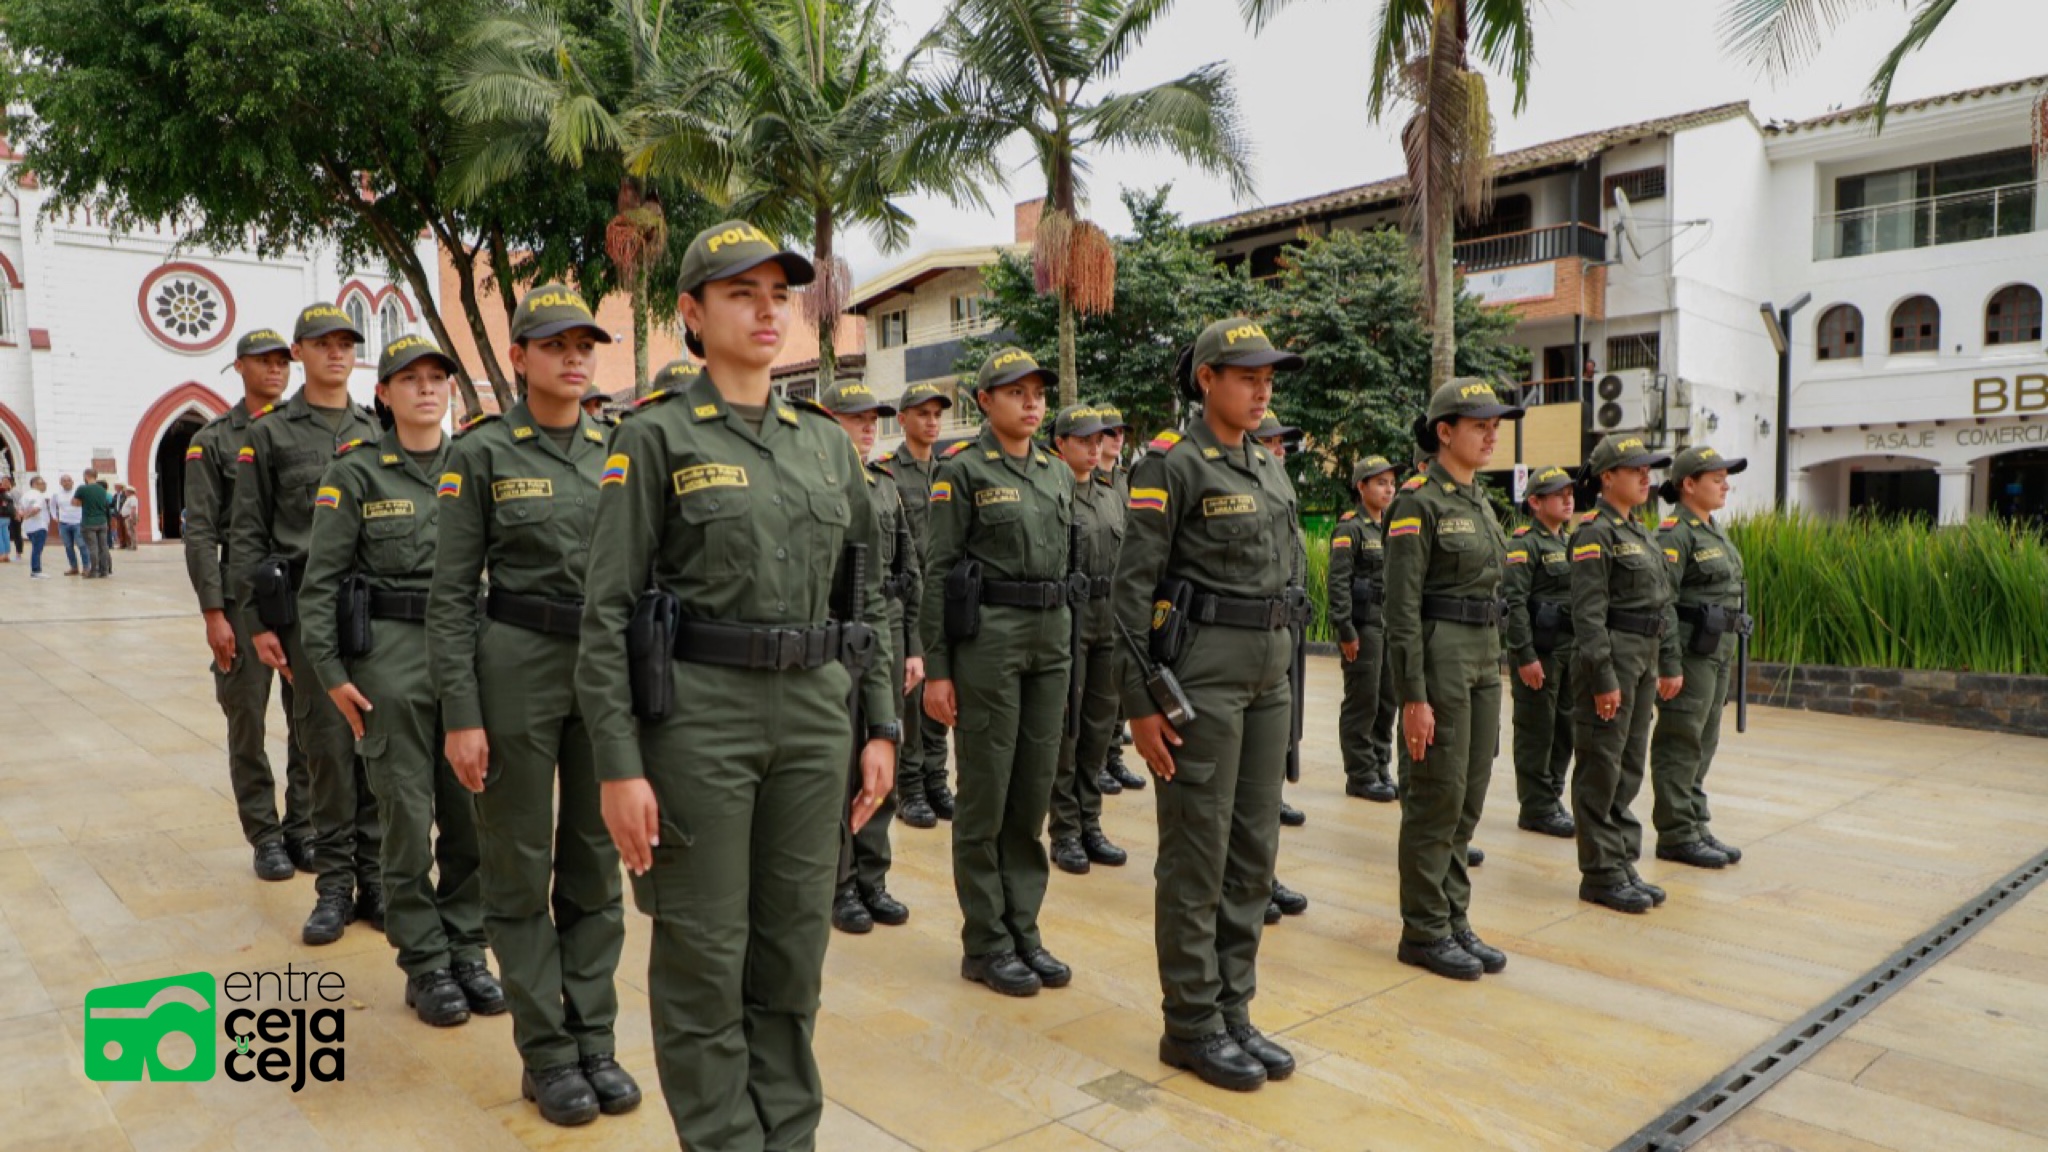 La Ceja reforzará su seguridad con la llegada de 25 nuevos auxiliares de Policía